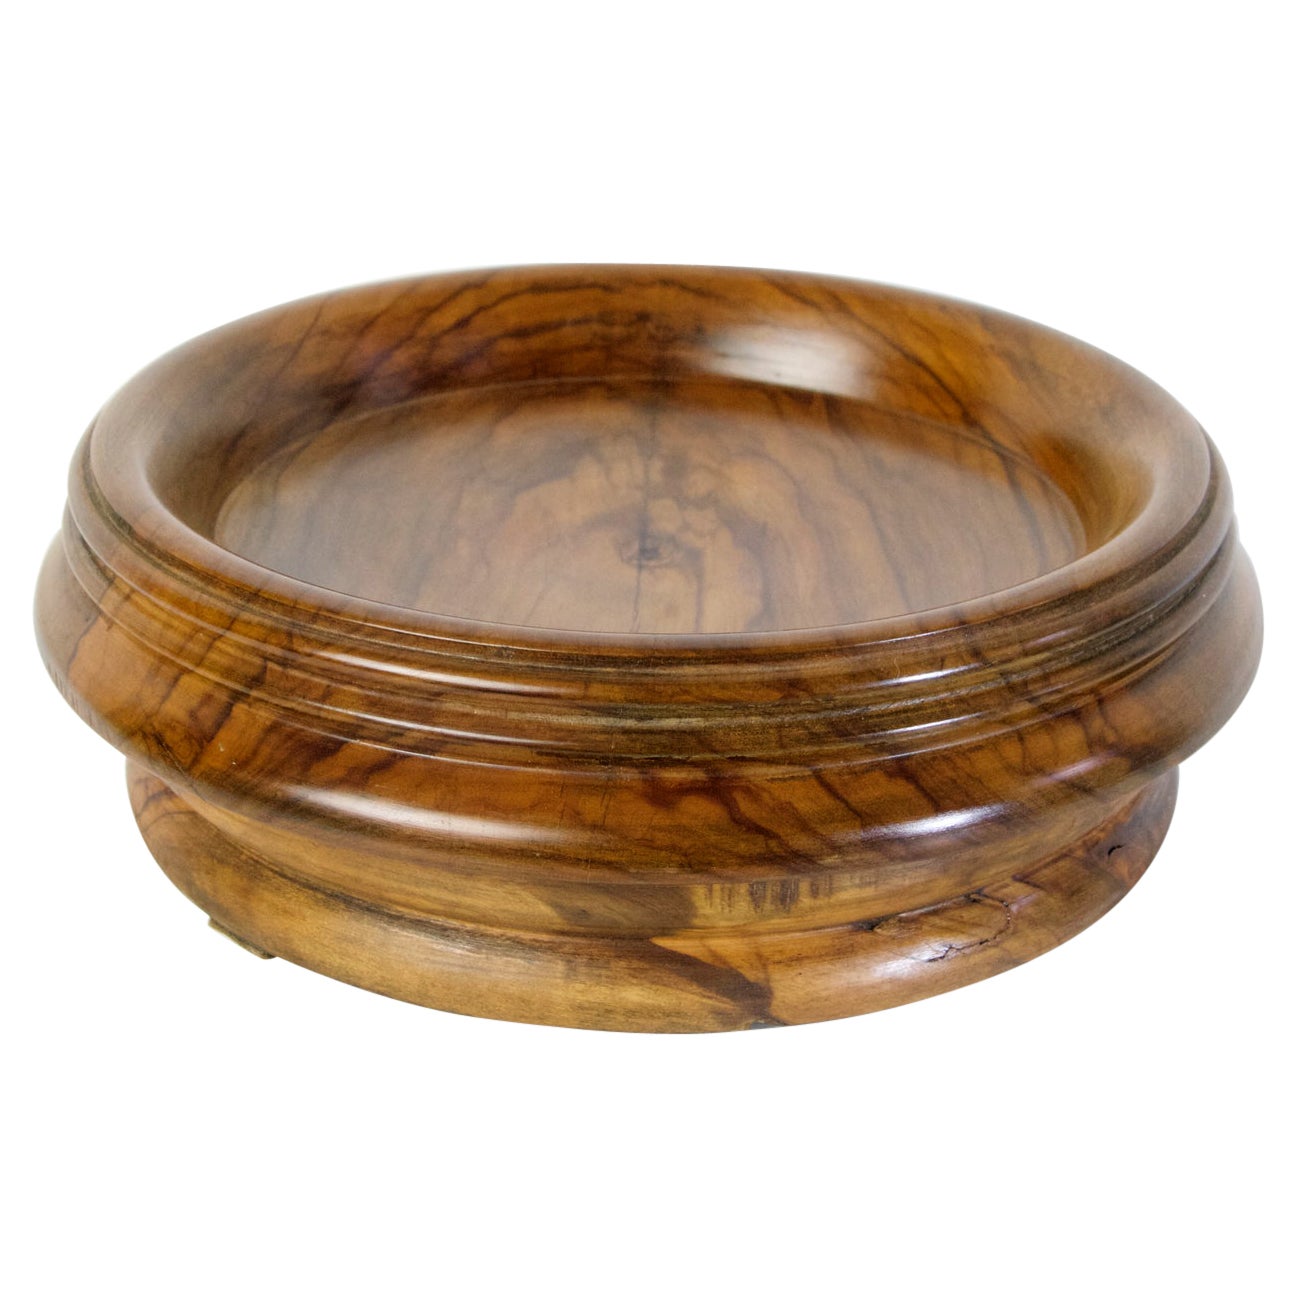 Ce bol vide poche antique a été fabriqué au tour à partir de bois d'olivier à la fin des années 1800. Il est en très bon état et sans aucun dommage.